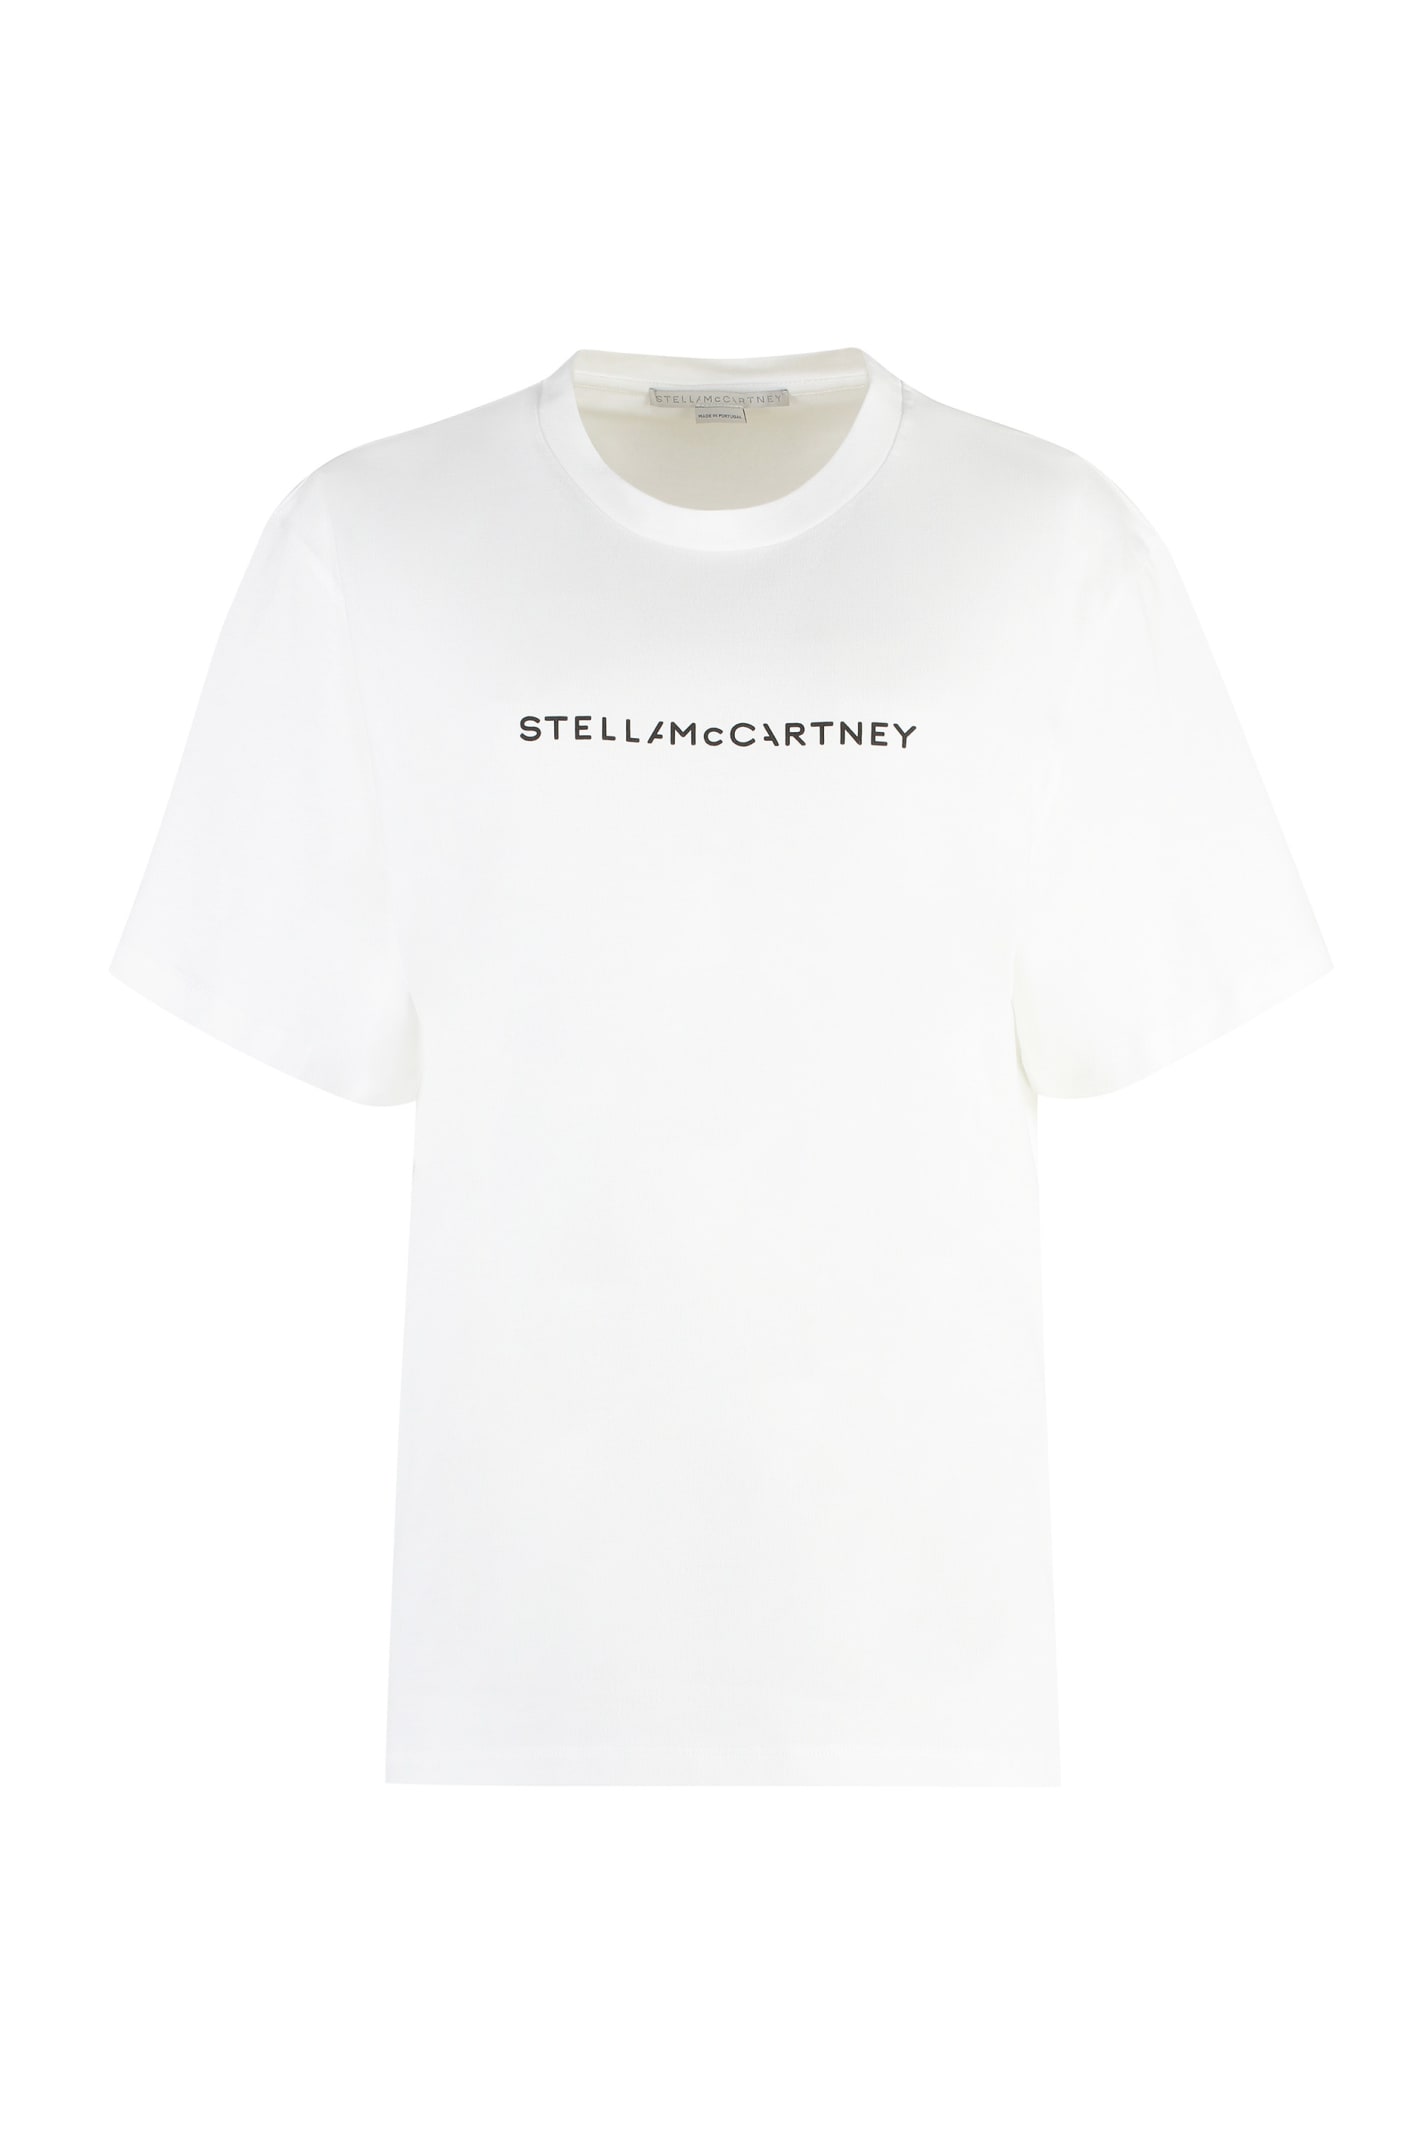 Stella Mccartney Cotton Crew-neck T-shirt In White